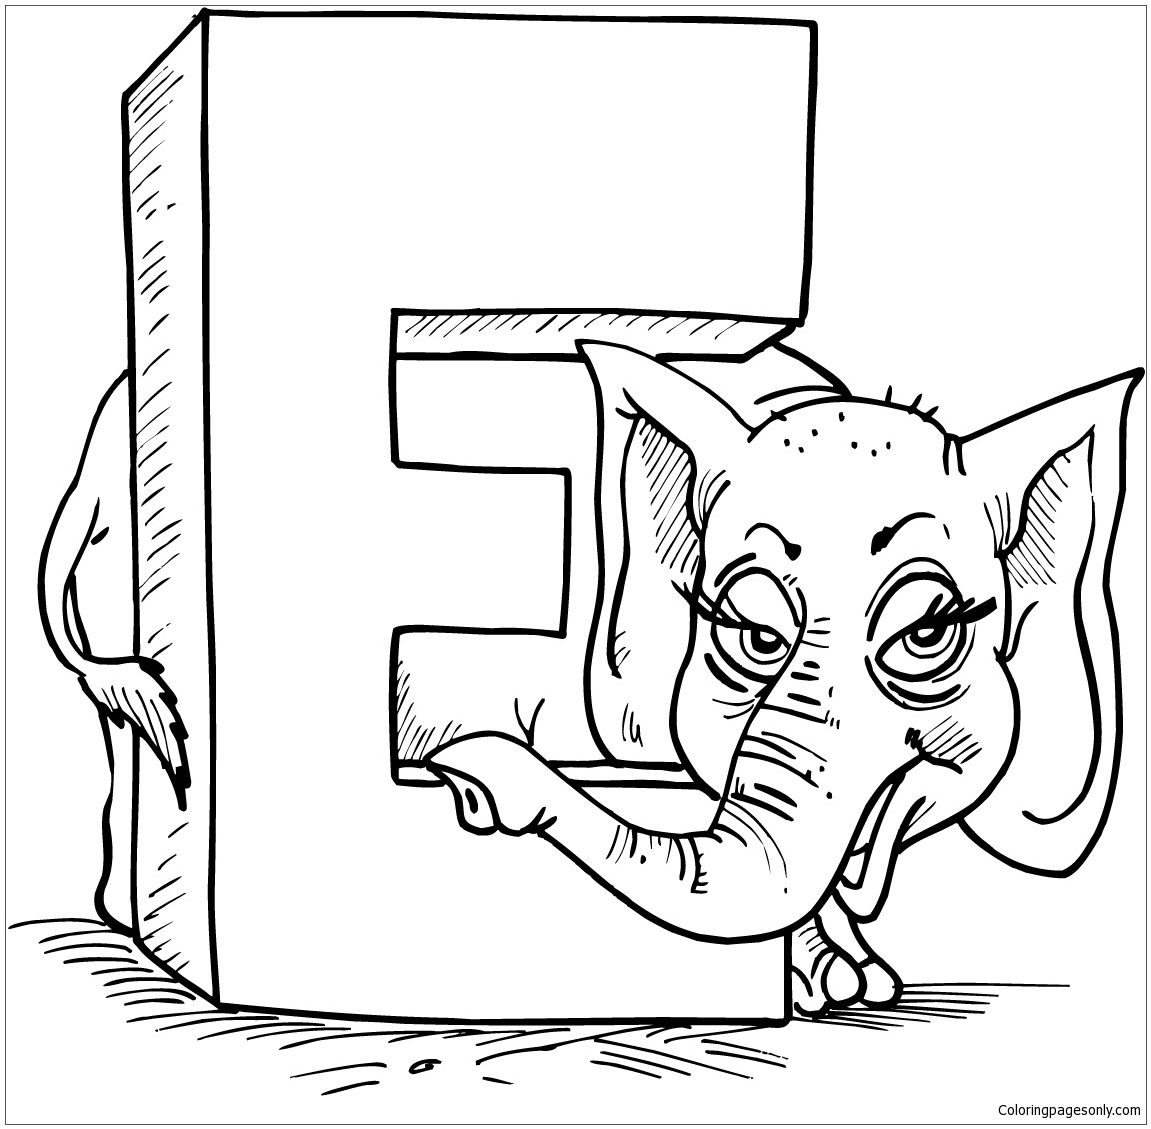 字母 E 代表字母 E 中的大象